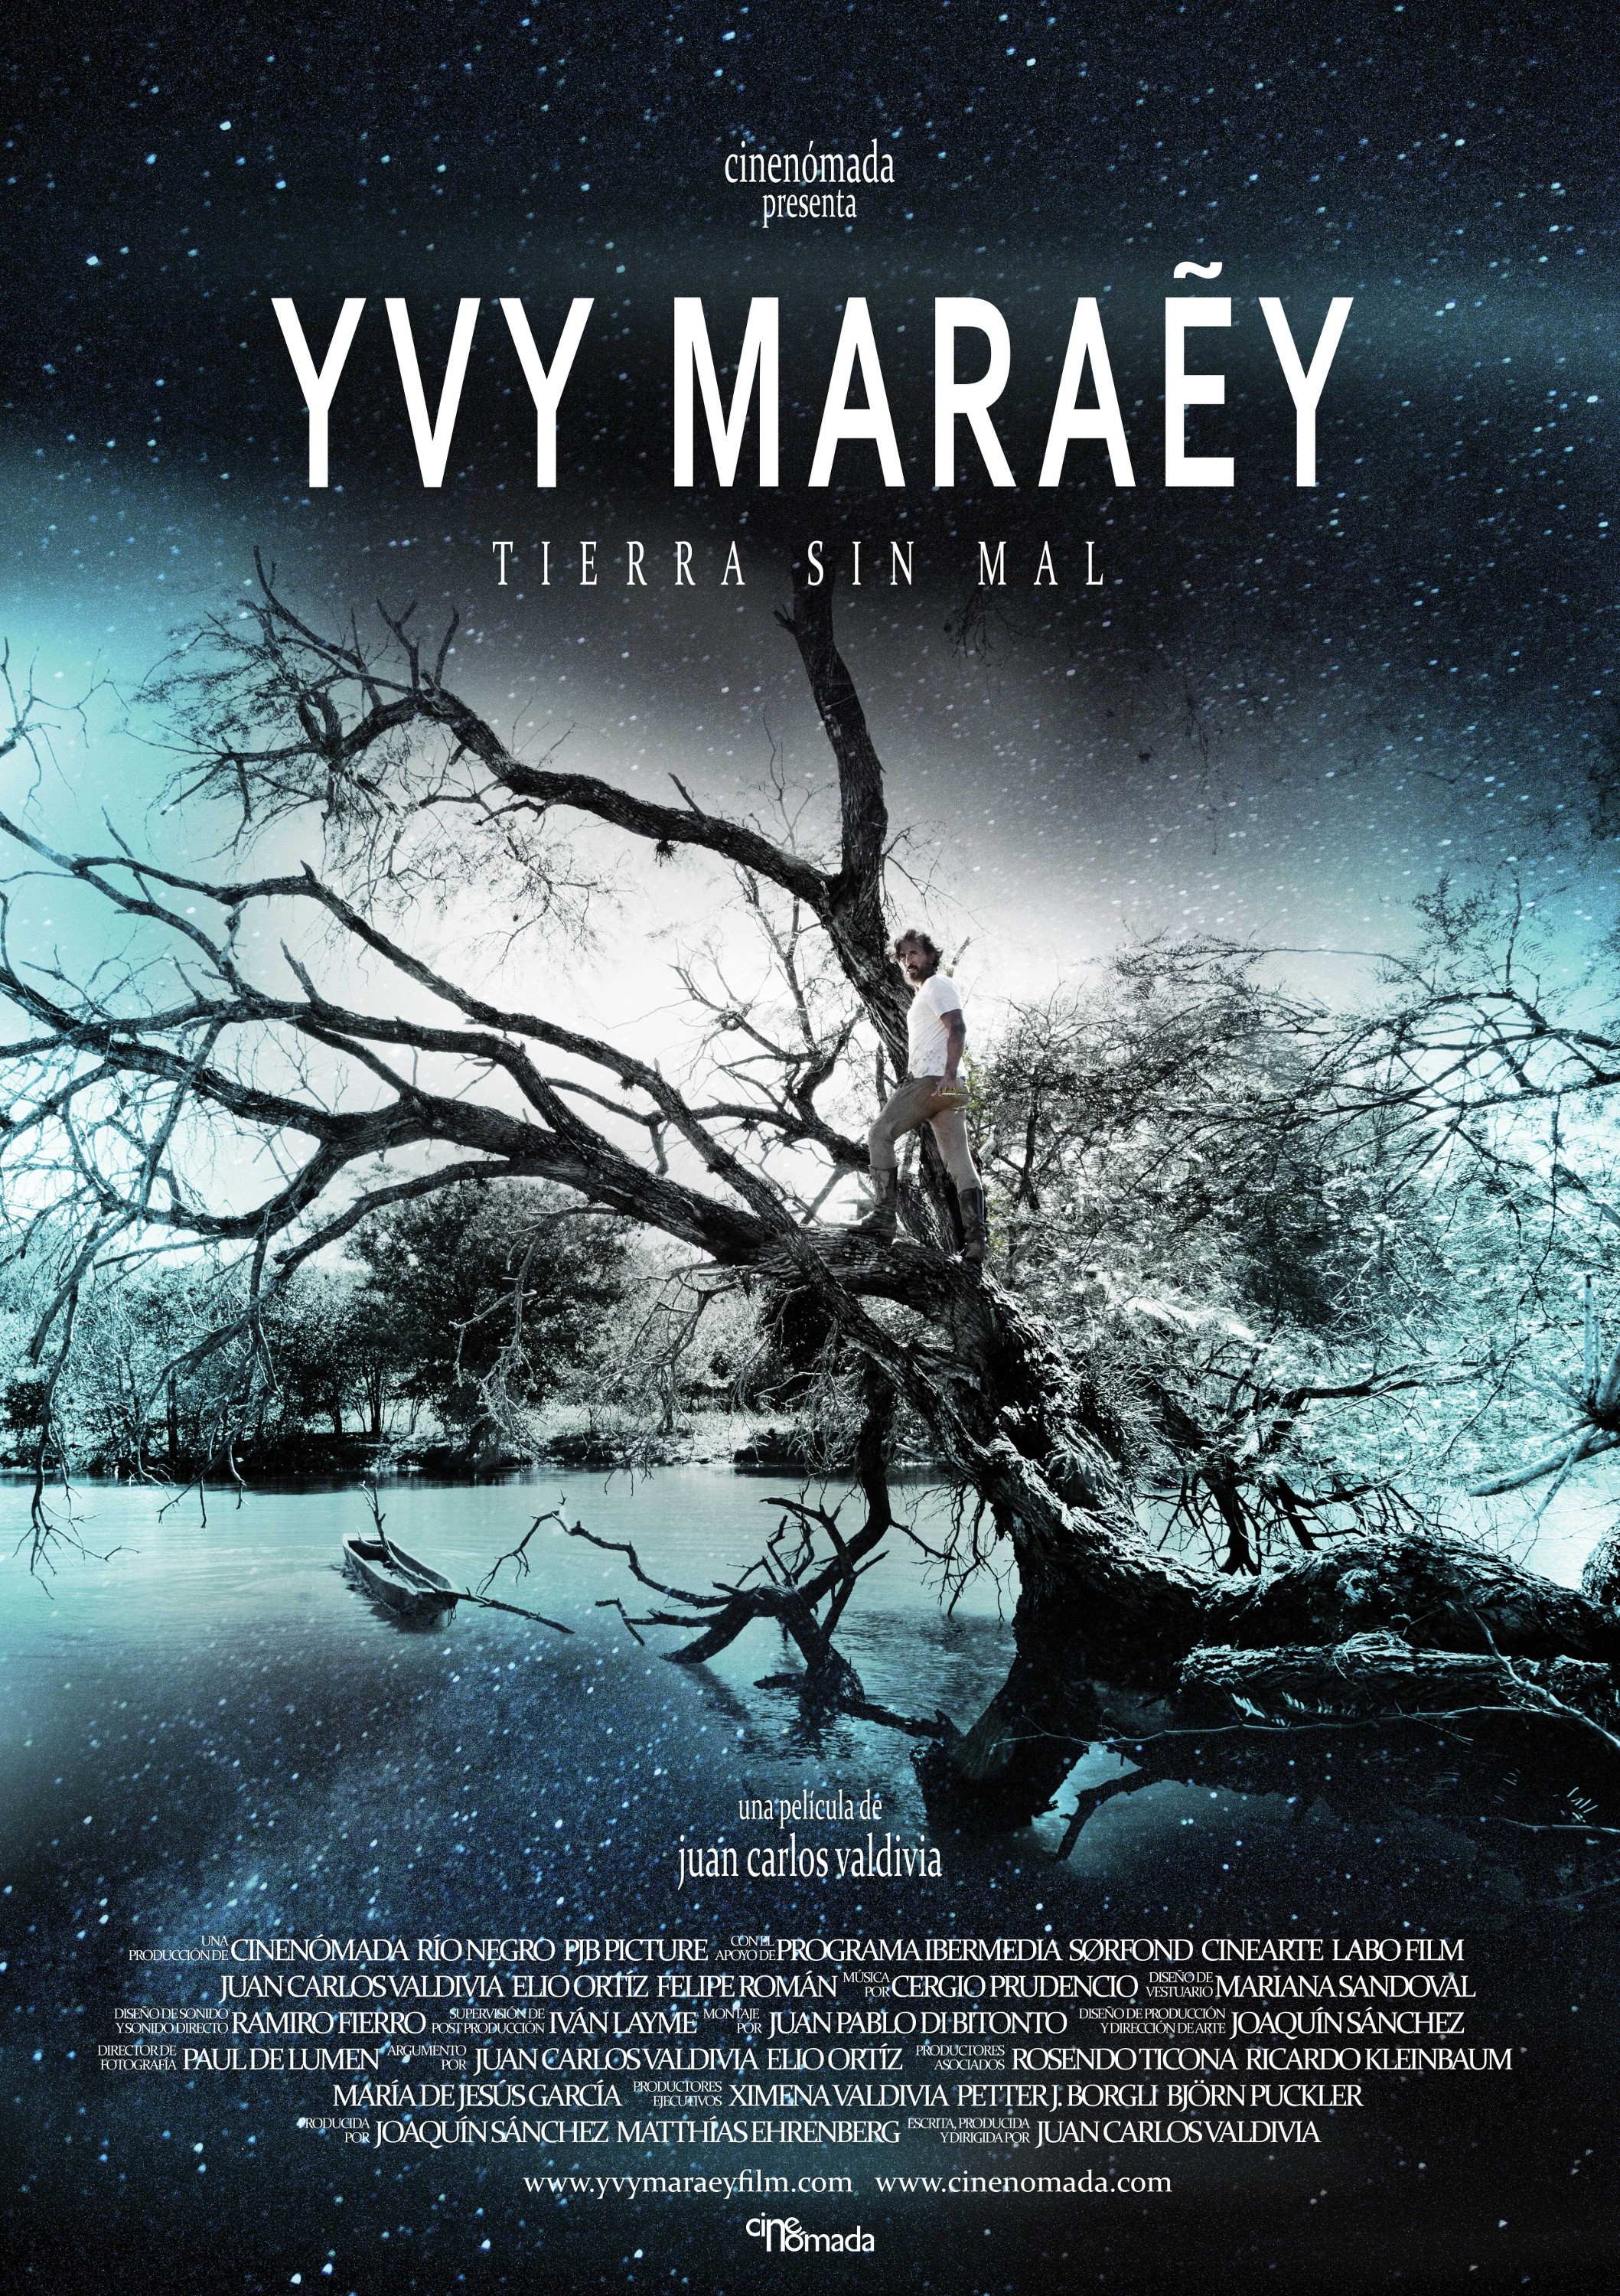 Mega Sized Movie Poster Image for Yvy Maraey 